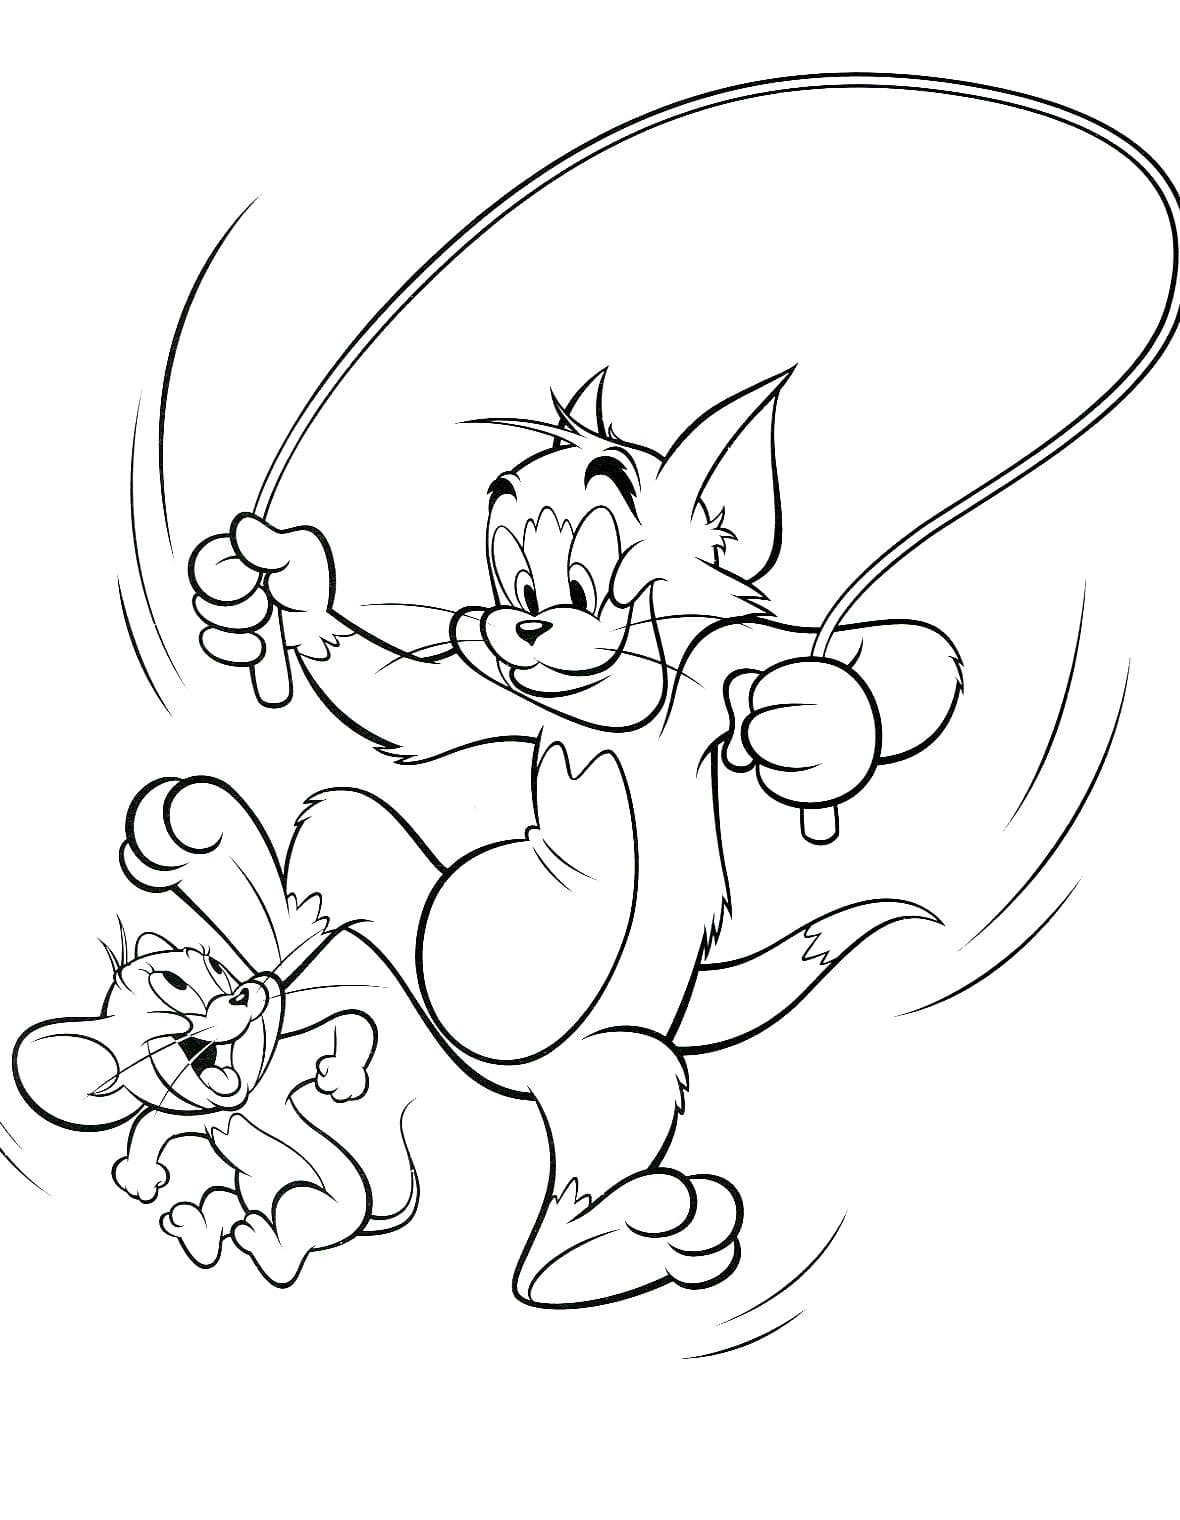 Ausmalbilder Tom und Jerry - 100 Kostenlose Ausmalbilder